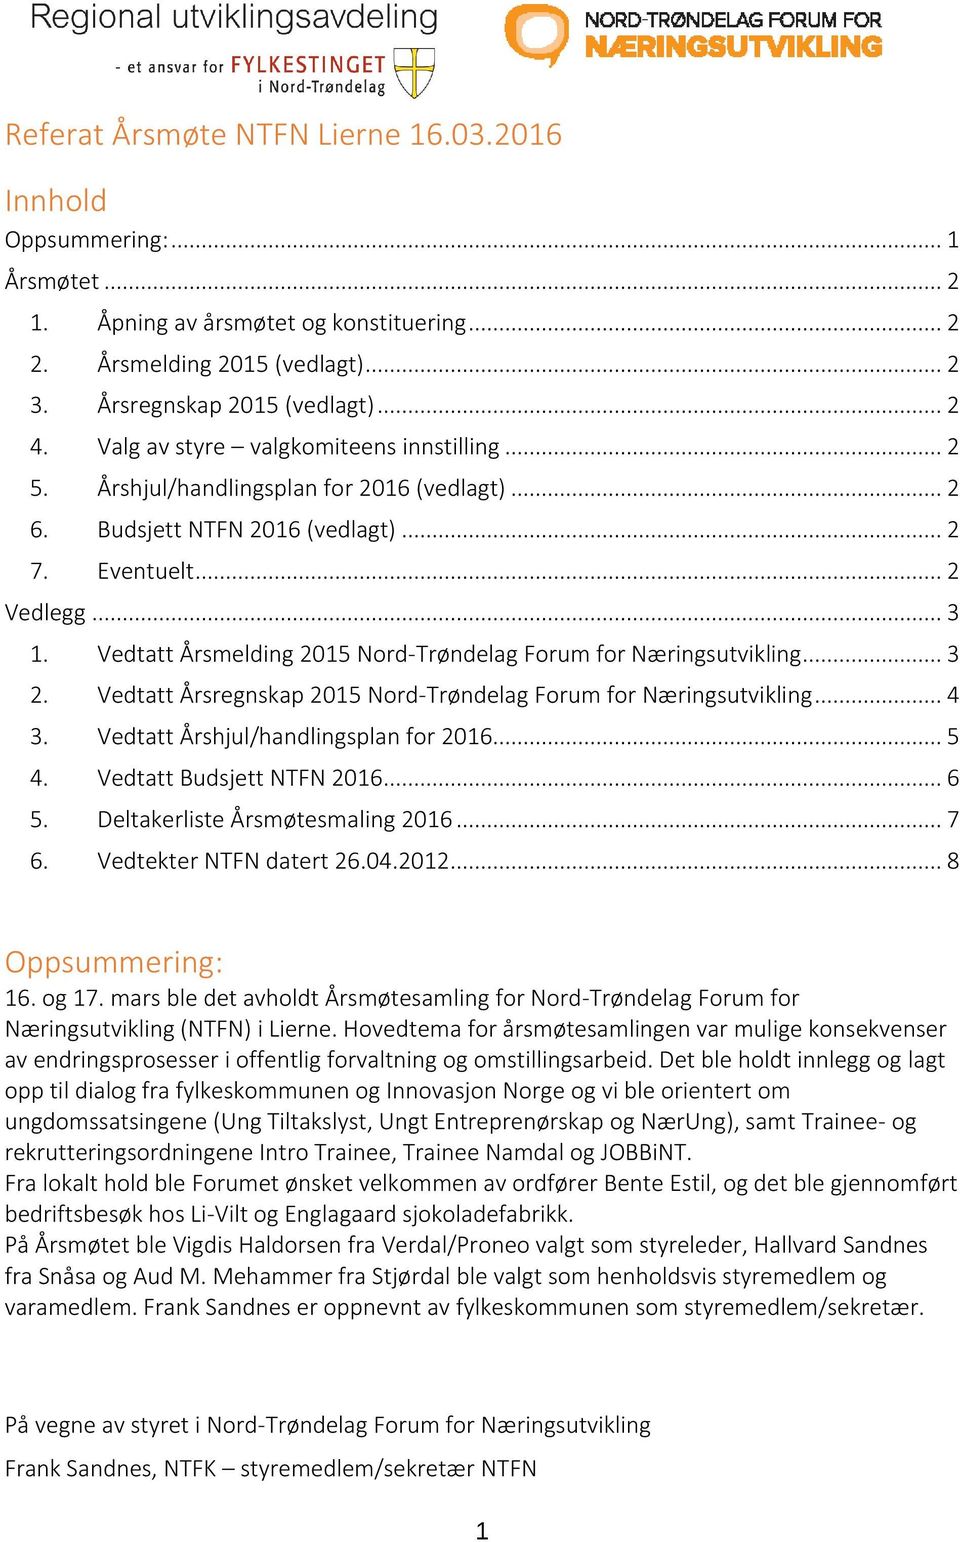 Vedtatt Årsmelding 2015 Nord-Trøndelag Forum for Næringsutvikling... 3 2. Vedtatt Årsregnskap 2015 Nord-Trøndelag Forum for Næringsutvikling... 4 3. Vedtatt Årshjul/handlingsplan for 2016... 5 4.